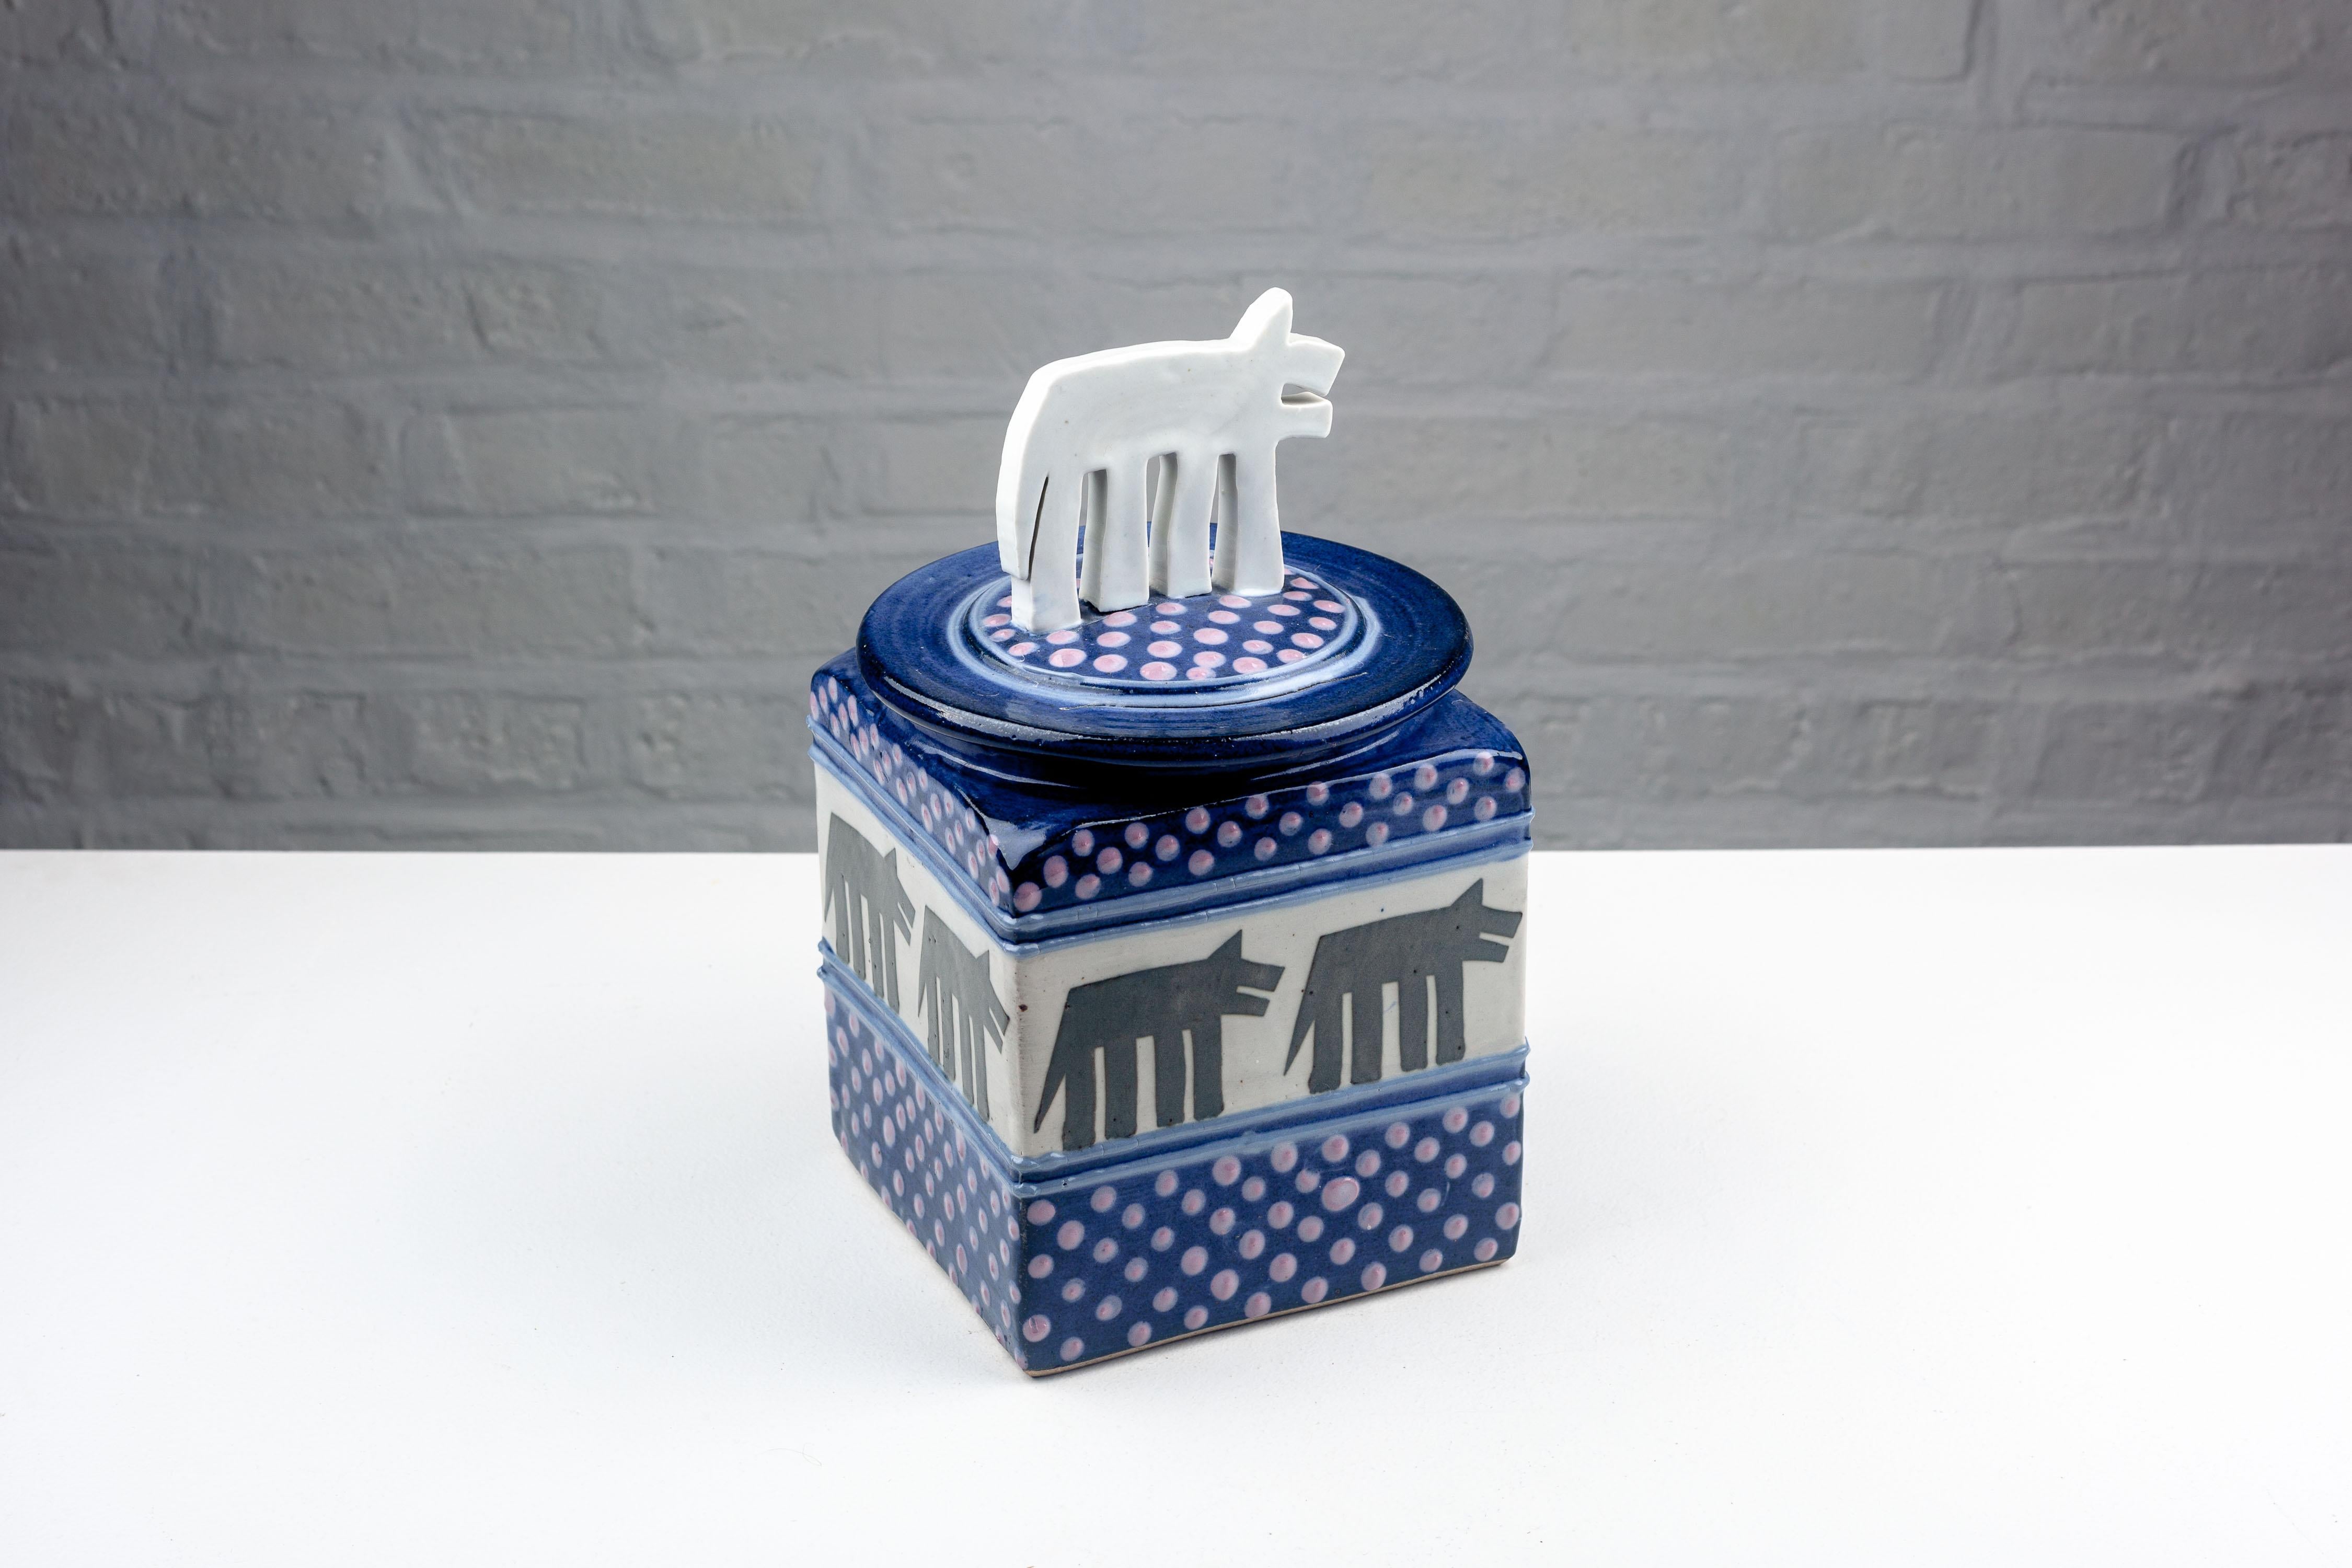 Diese postmoderne Keramik-Keksdose mit ihrer markanten kubischen Form und dem verspielten großen Hundegriff ist ein Paradebeispiel für die einzigartige Handwerkskunst von Steve und Miky Cunningham aus den frühen 1990er Jahren. Handgefertigt bei